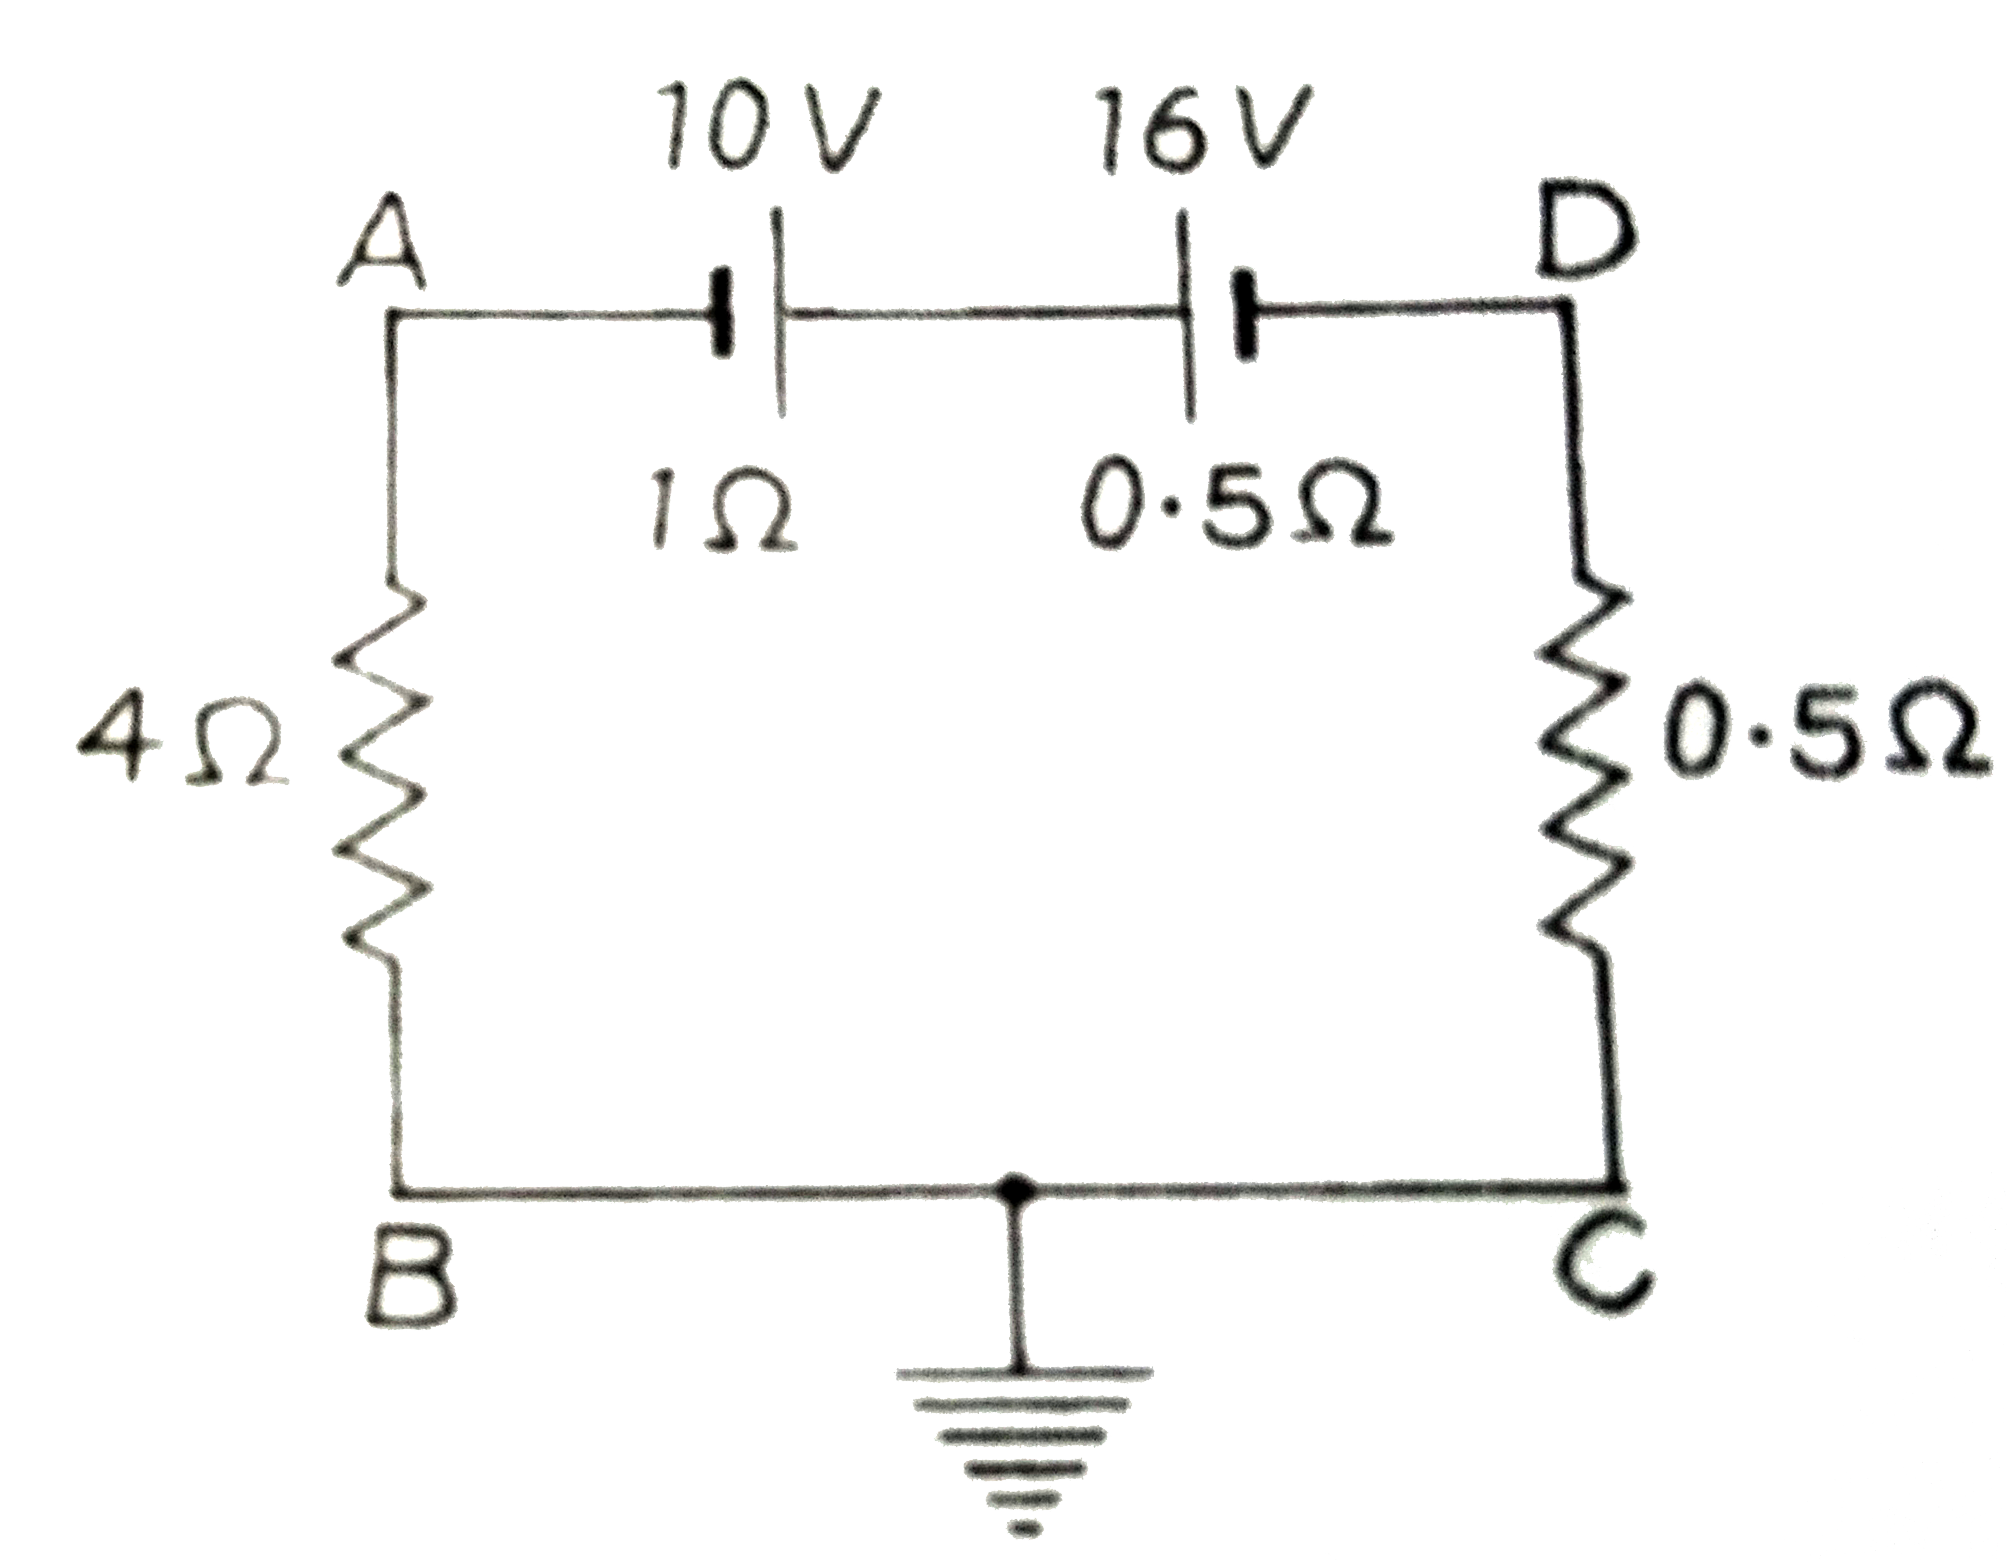 दिये गये परिपथ  में ज्ञात  कीजिए  : (i)  बिंदु  A का  विभव ,  (ii)   बिंदु  D  का  विभव  तथा  (iii)   10  V  की बैटरी  के सिरों पर लगाये गये  वोल्टमीटर   की  माप ।